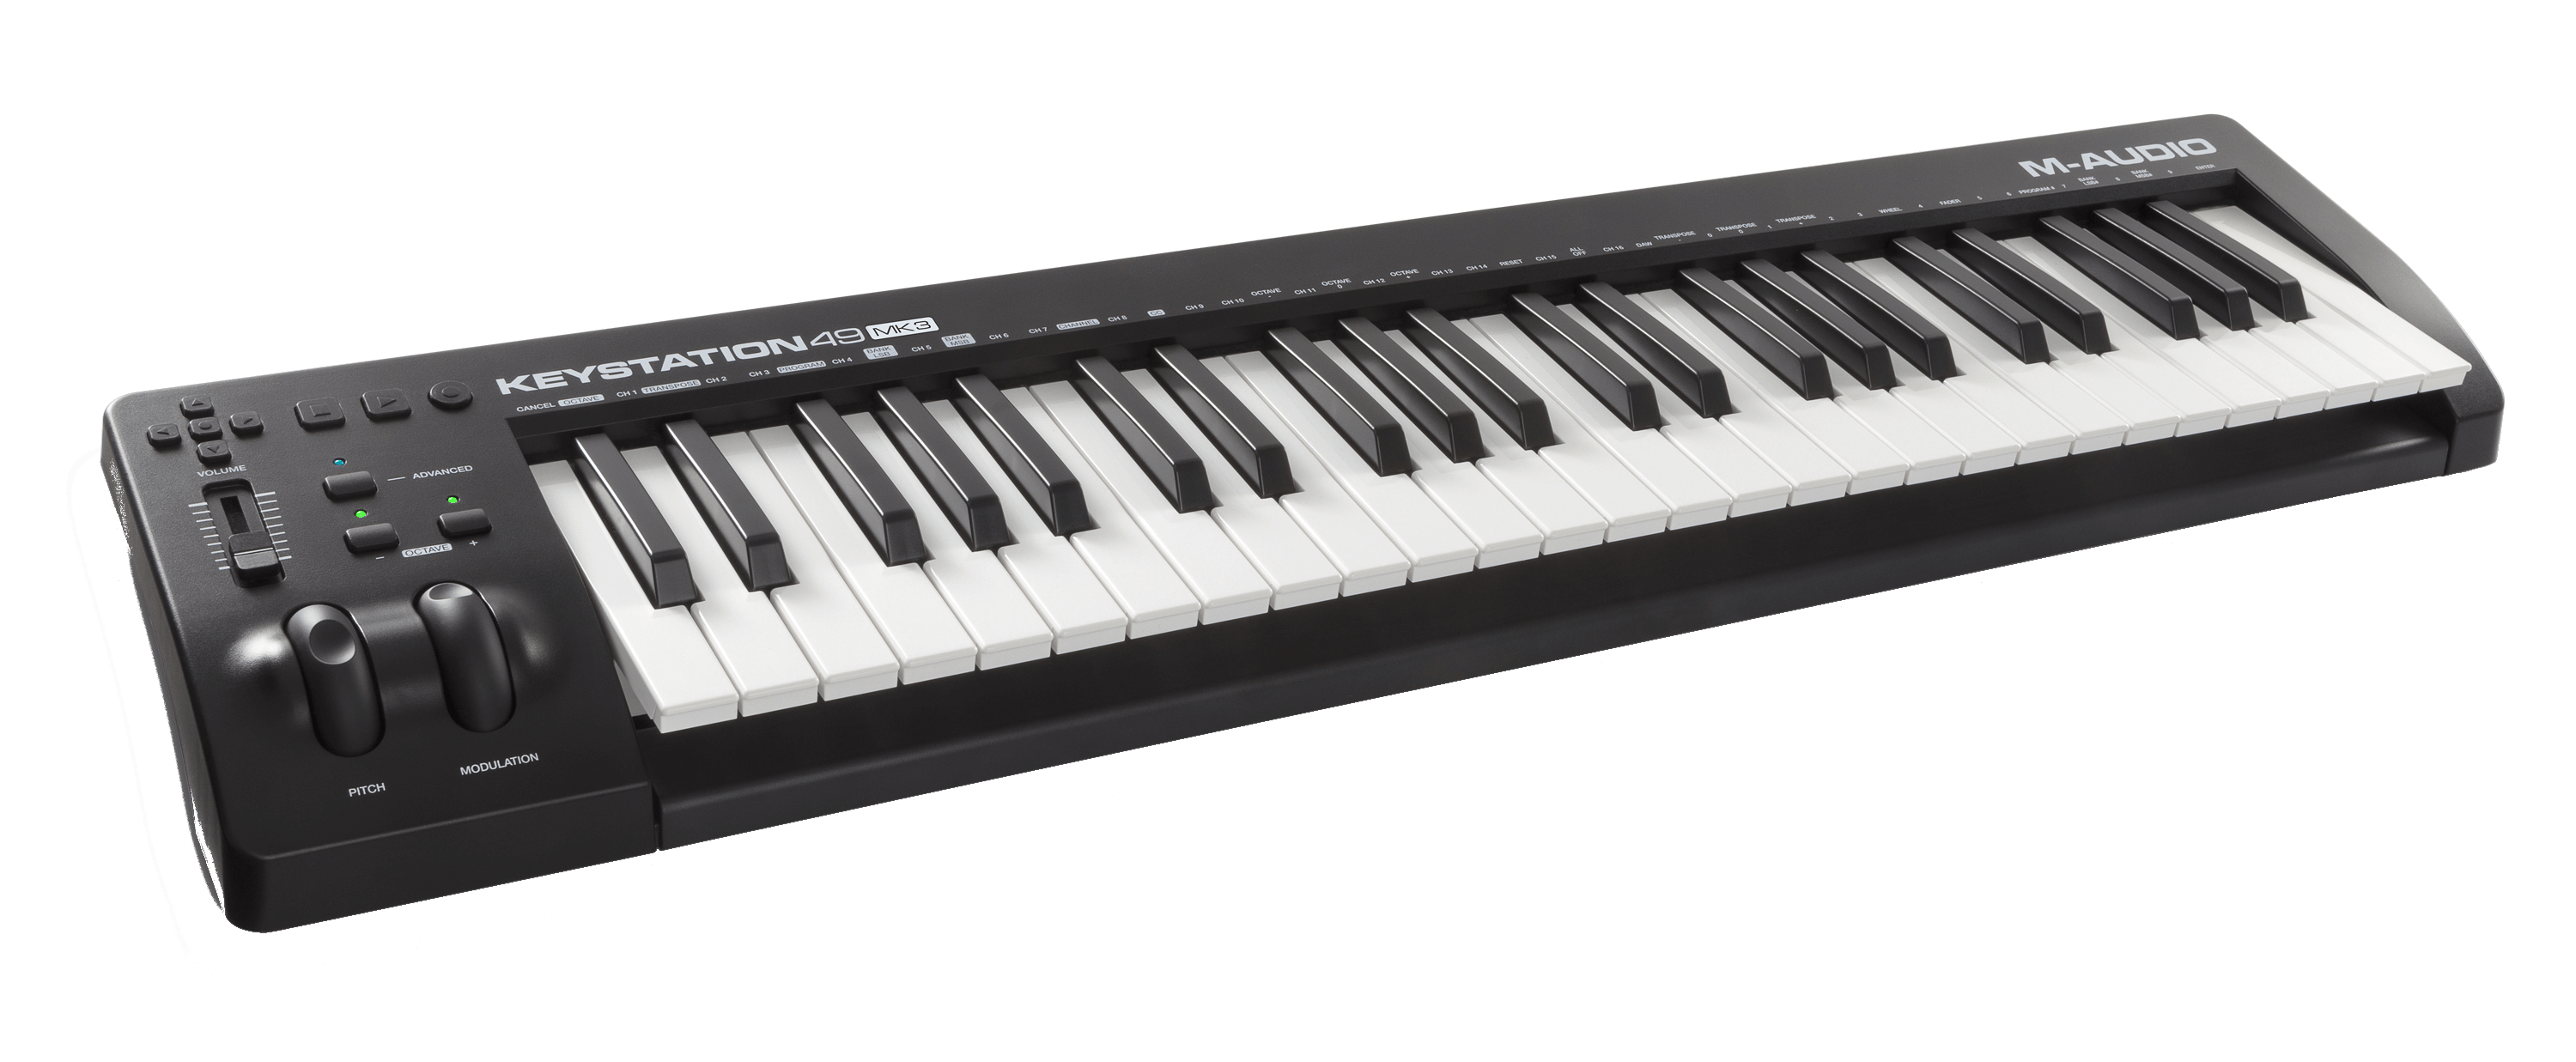 M-Audio-Keystation-49-MK3-49-key-Keyboard-Controller